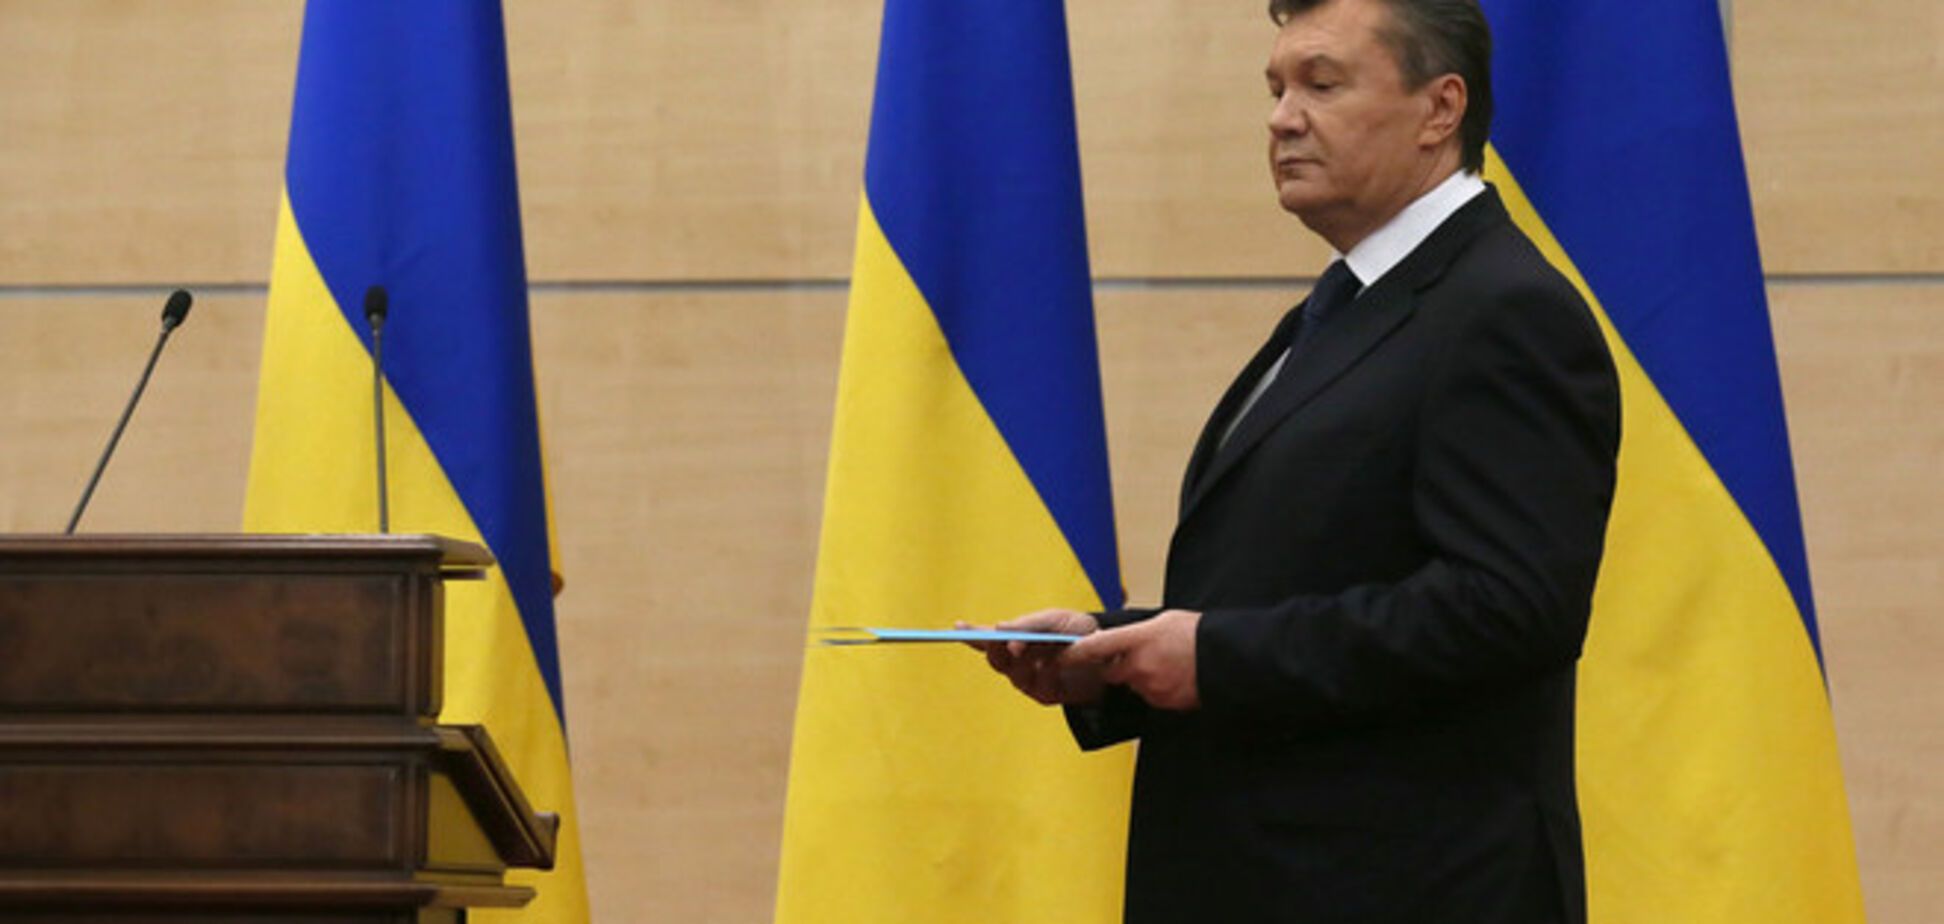 Нова спроба: The Moscow Post анонсував прес-конференцію Януковича